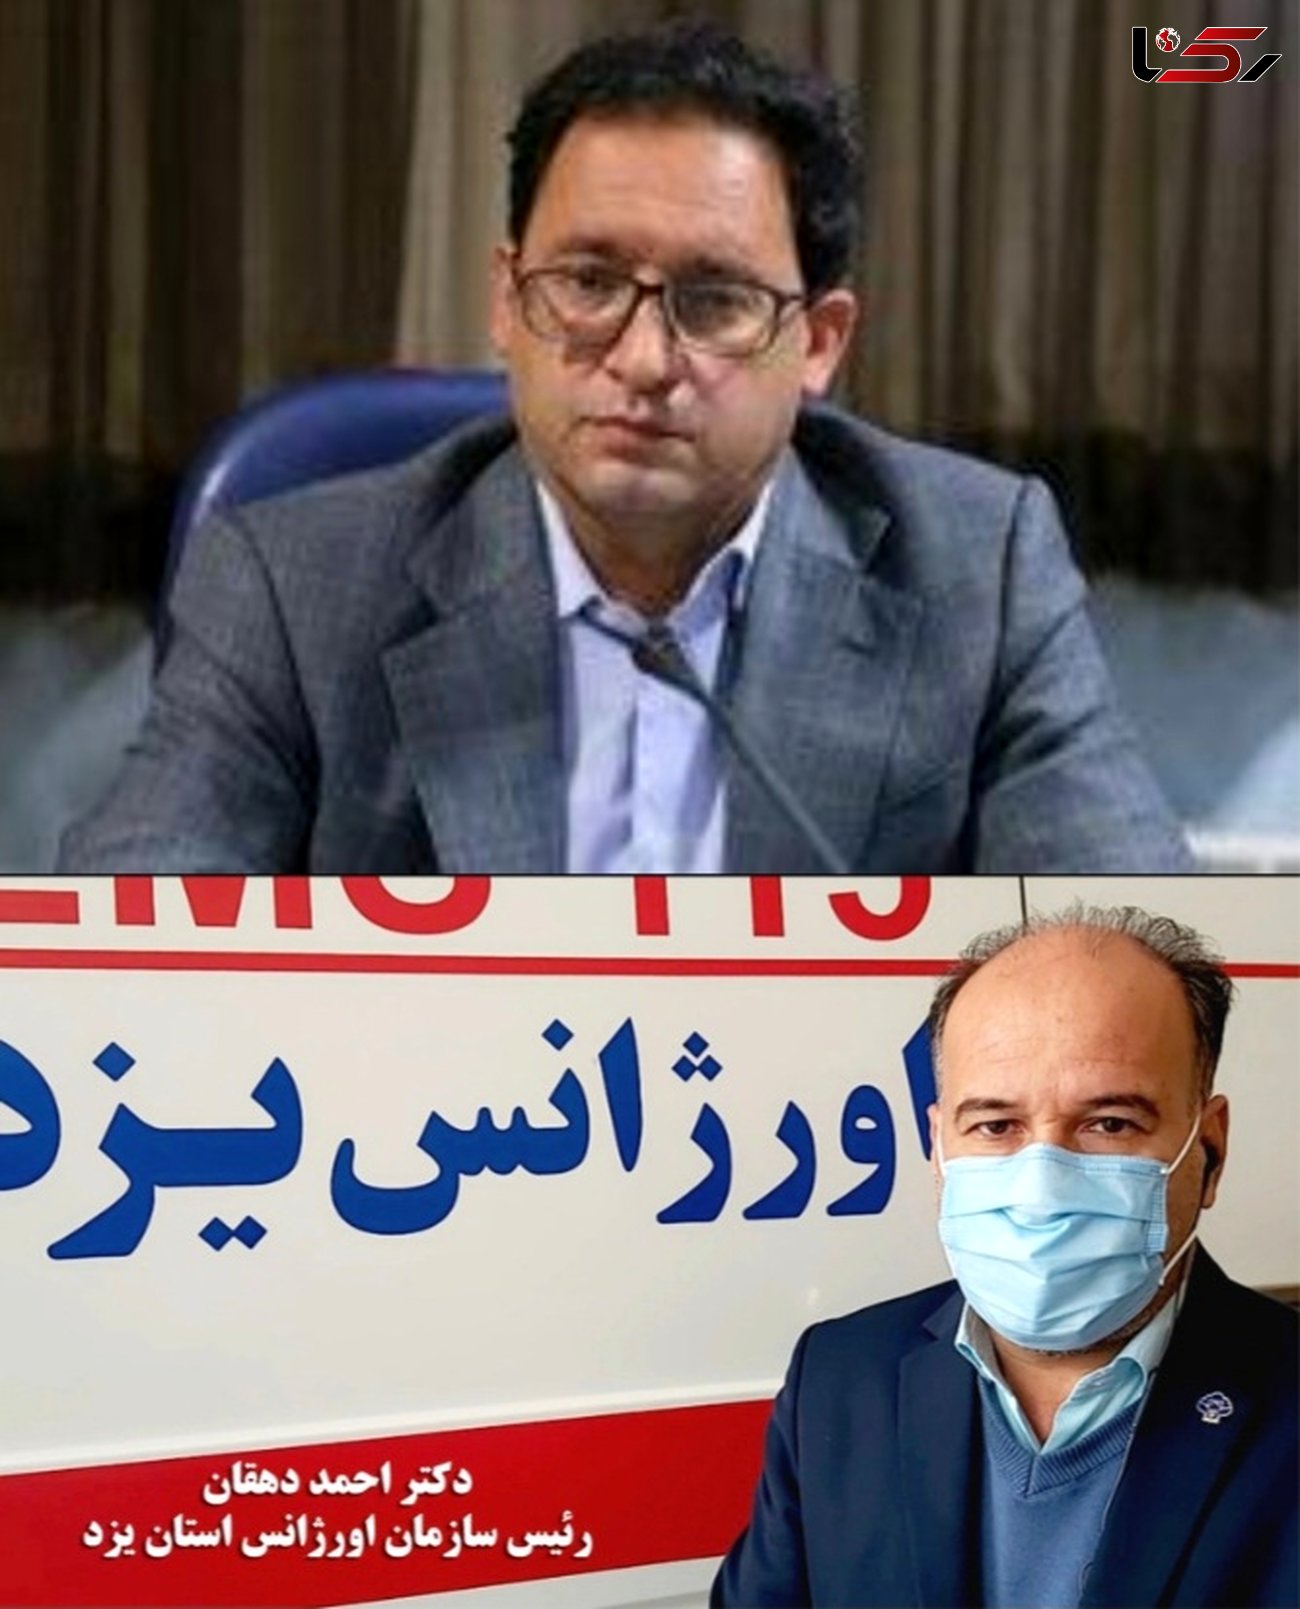  رئیس سازمان اورژانس کشور از  رئیس دانشگاه علوم پزشکی و رئیس سازمان اورژانس یزد تقدیر کرد